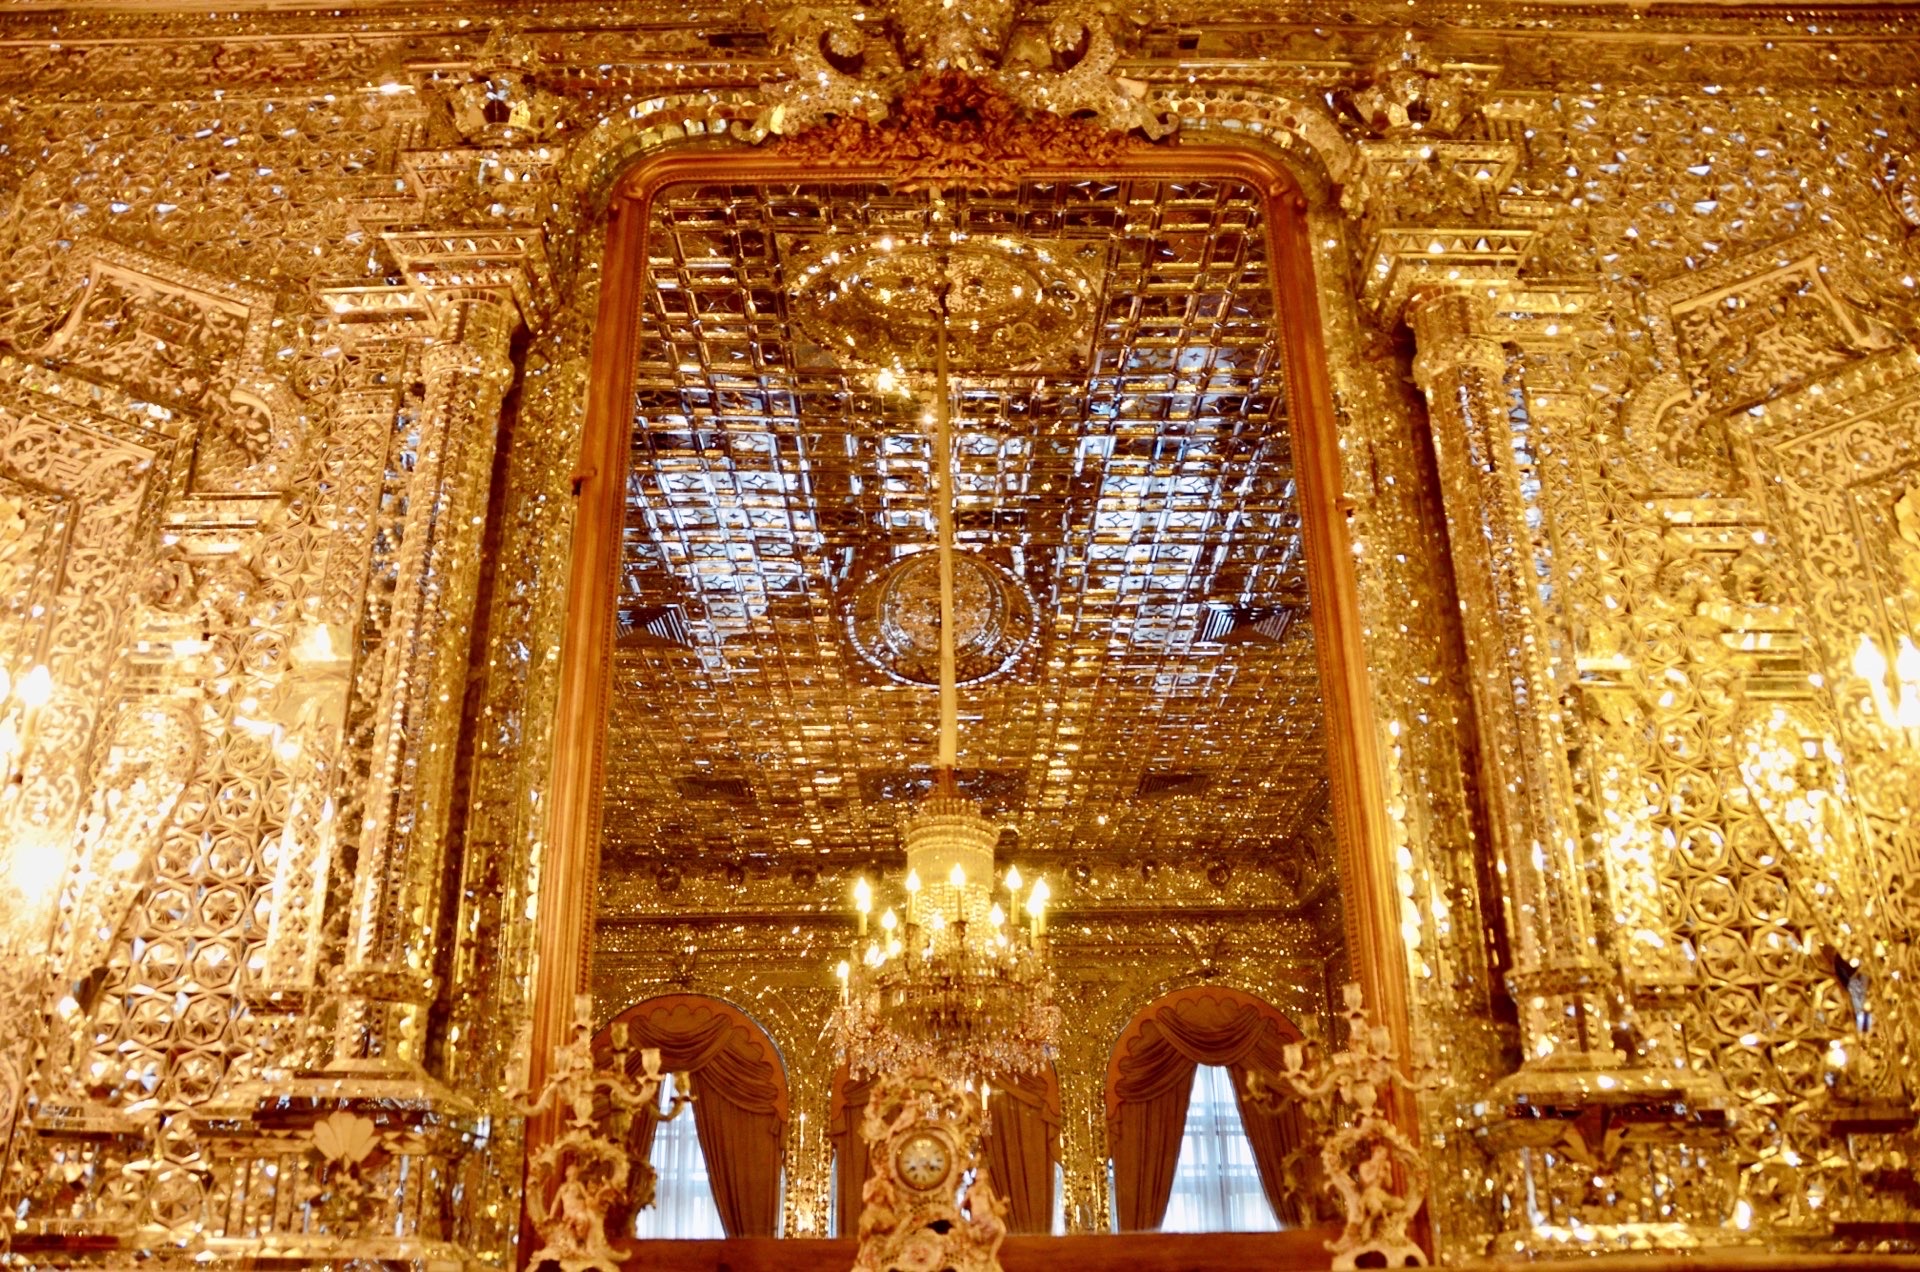 格列斯坦宫中的镜厅，是最有名的。四周镶嵌着无数的金黄亮片，金光闪闪，金碧辉煌。美丽异常。